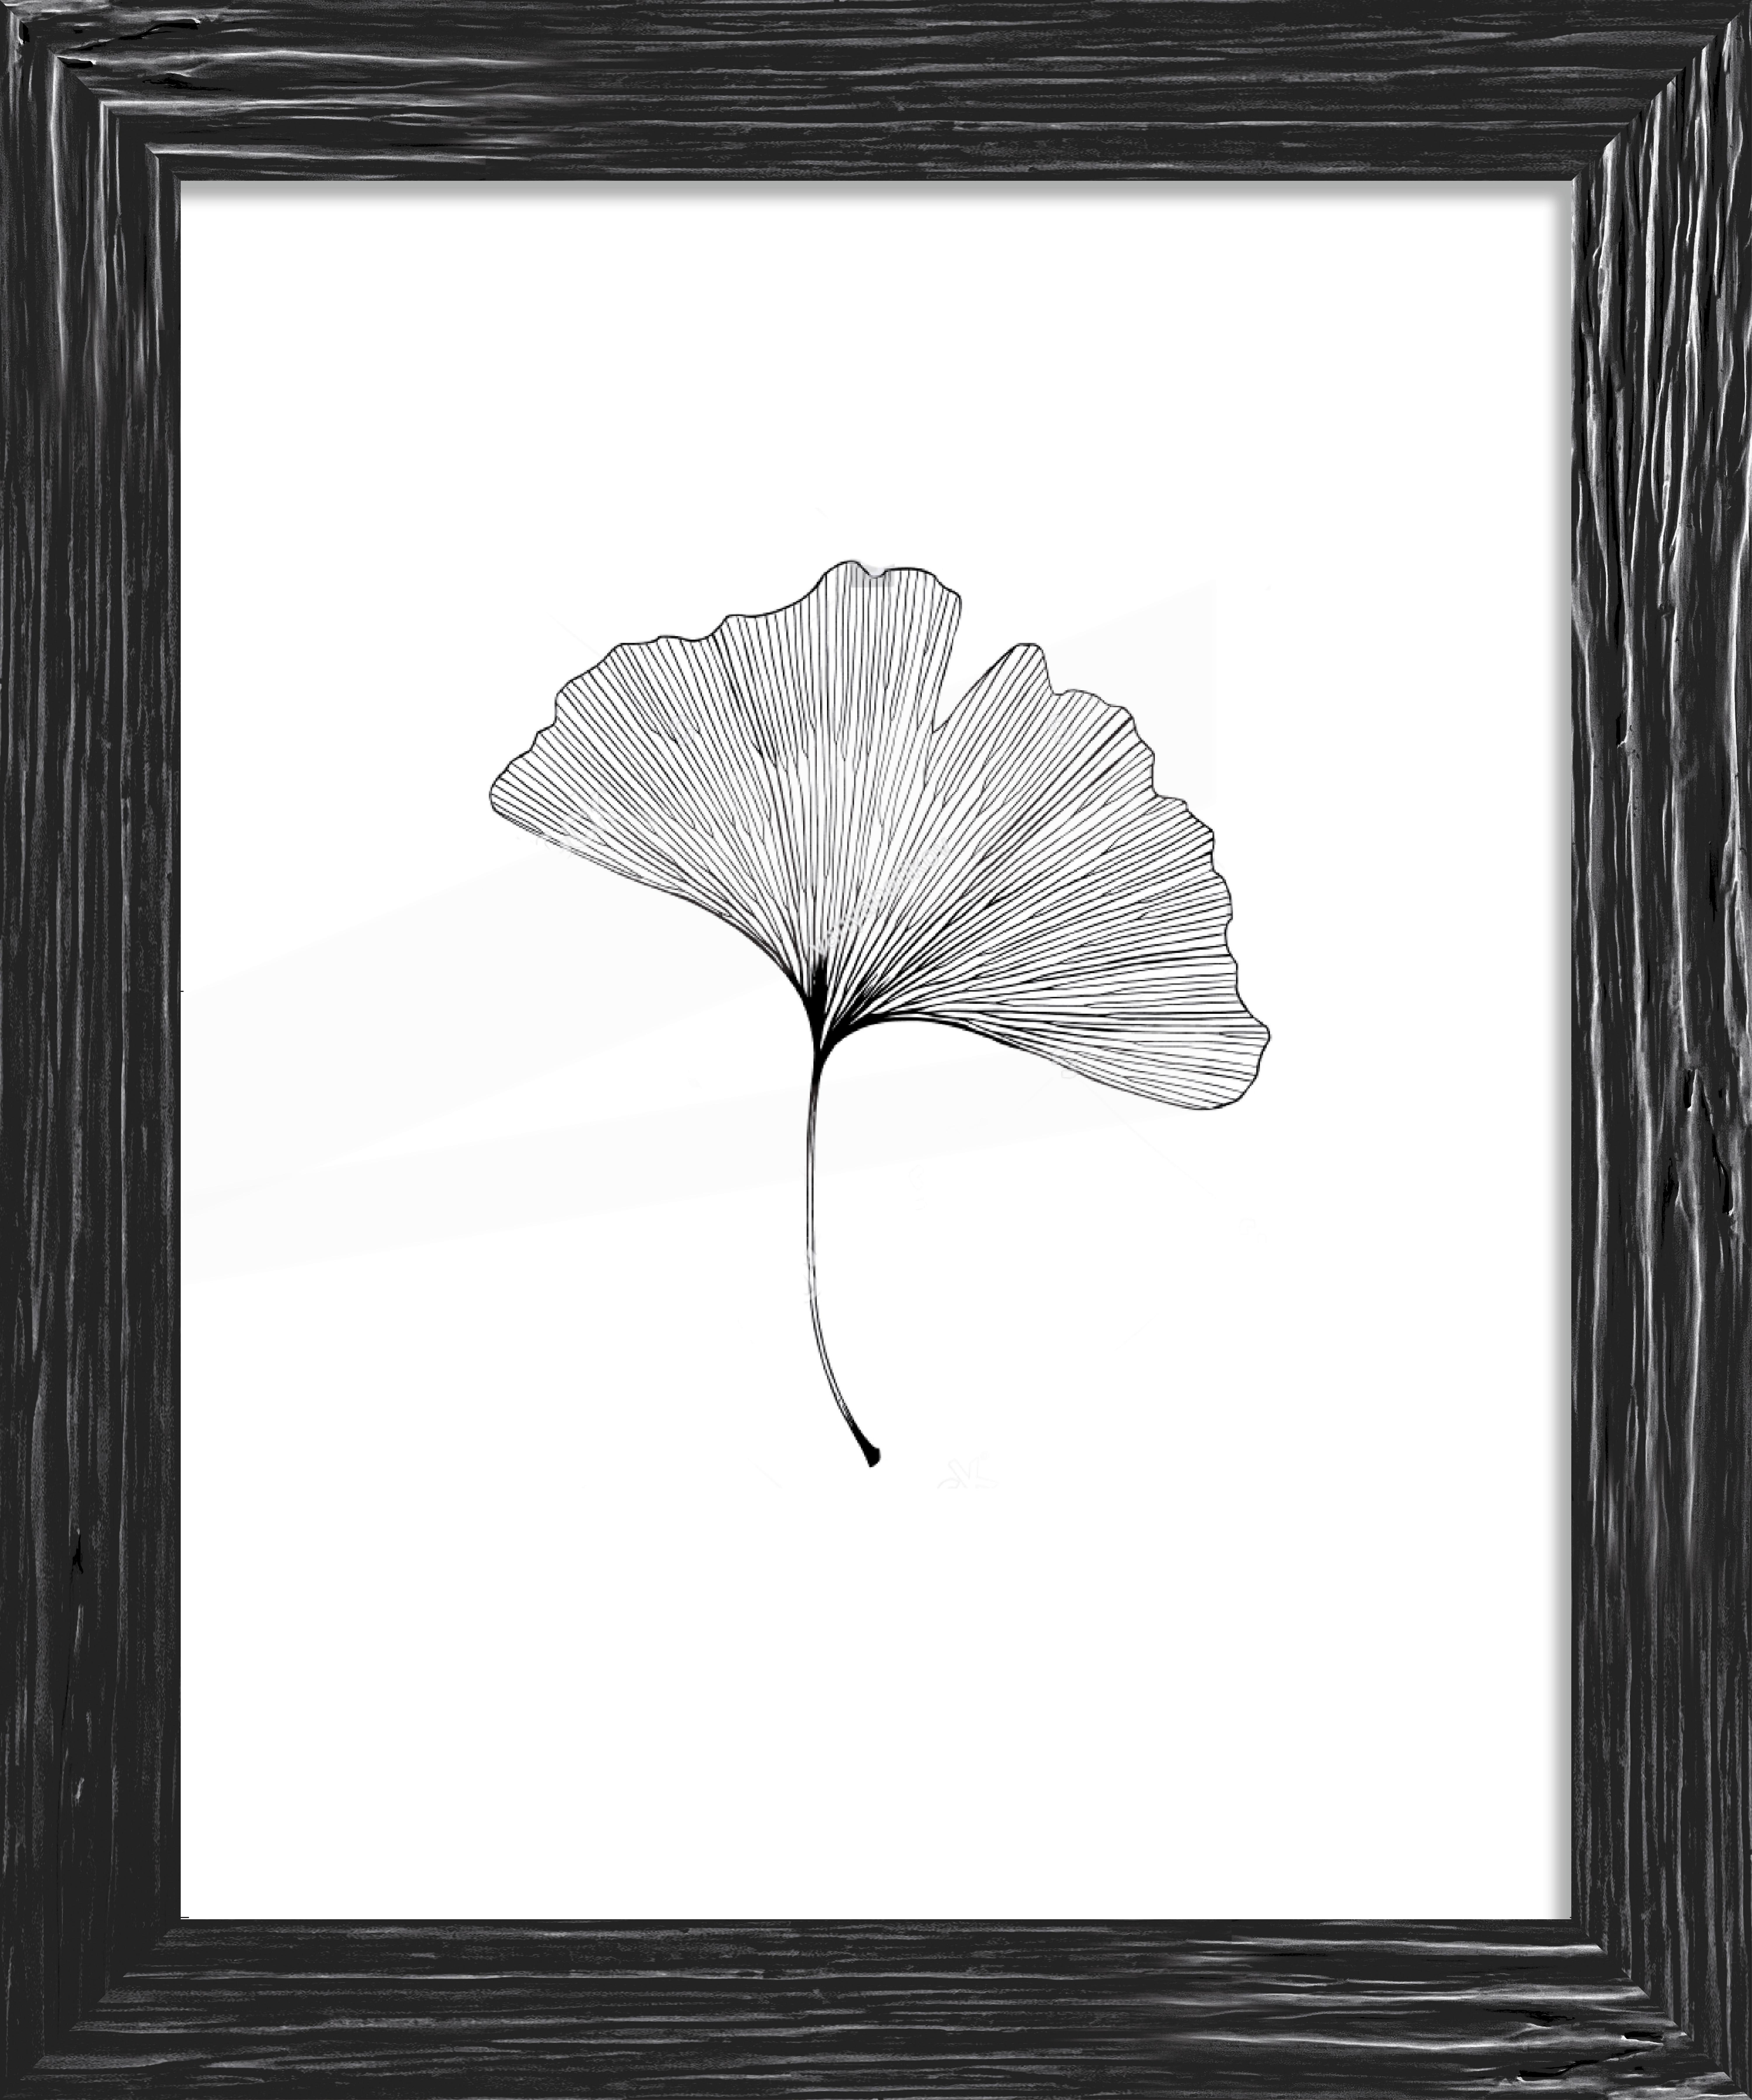 Rám Na Obrazy Frido, 40/50cm - černá, Romantický / Rustikální, dřevo (40/50cm) - ecoTree